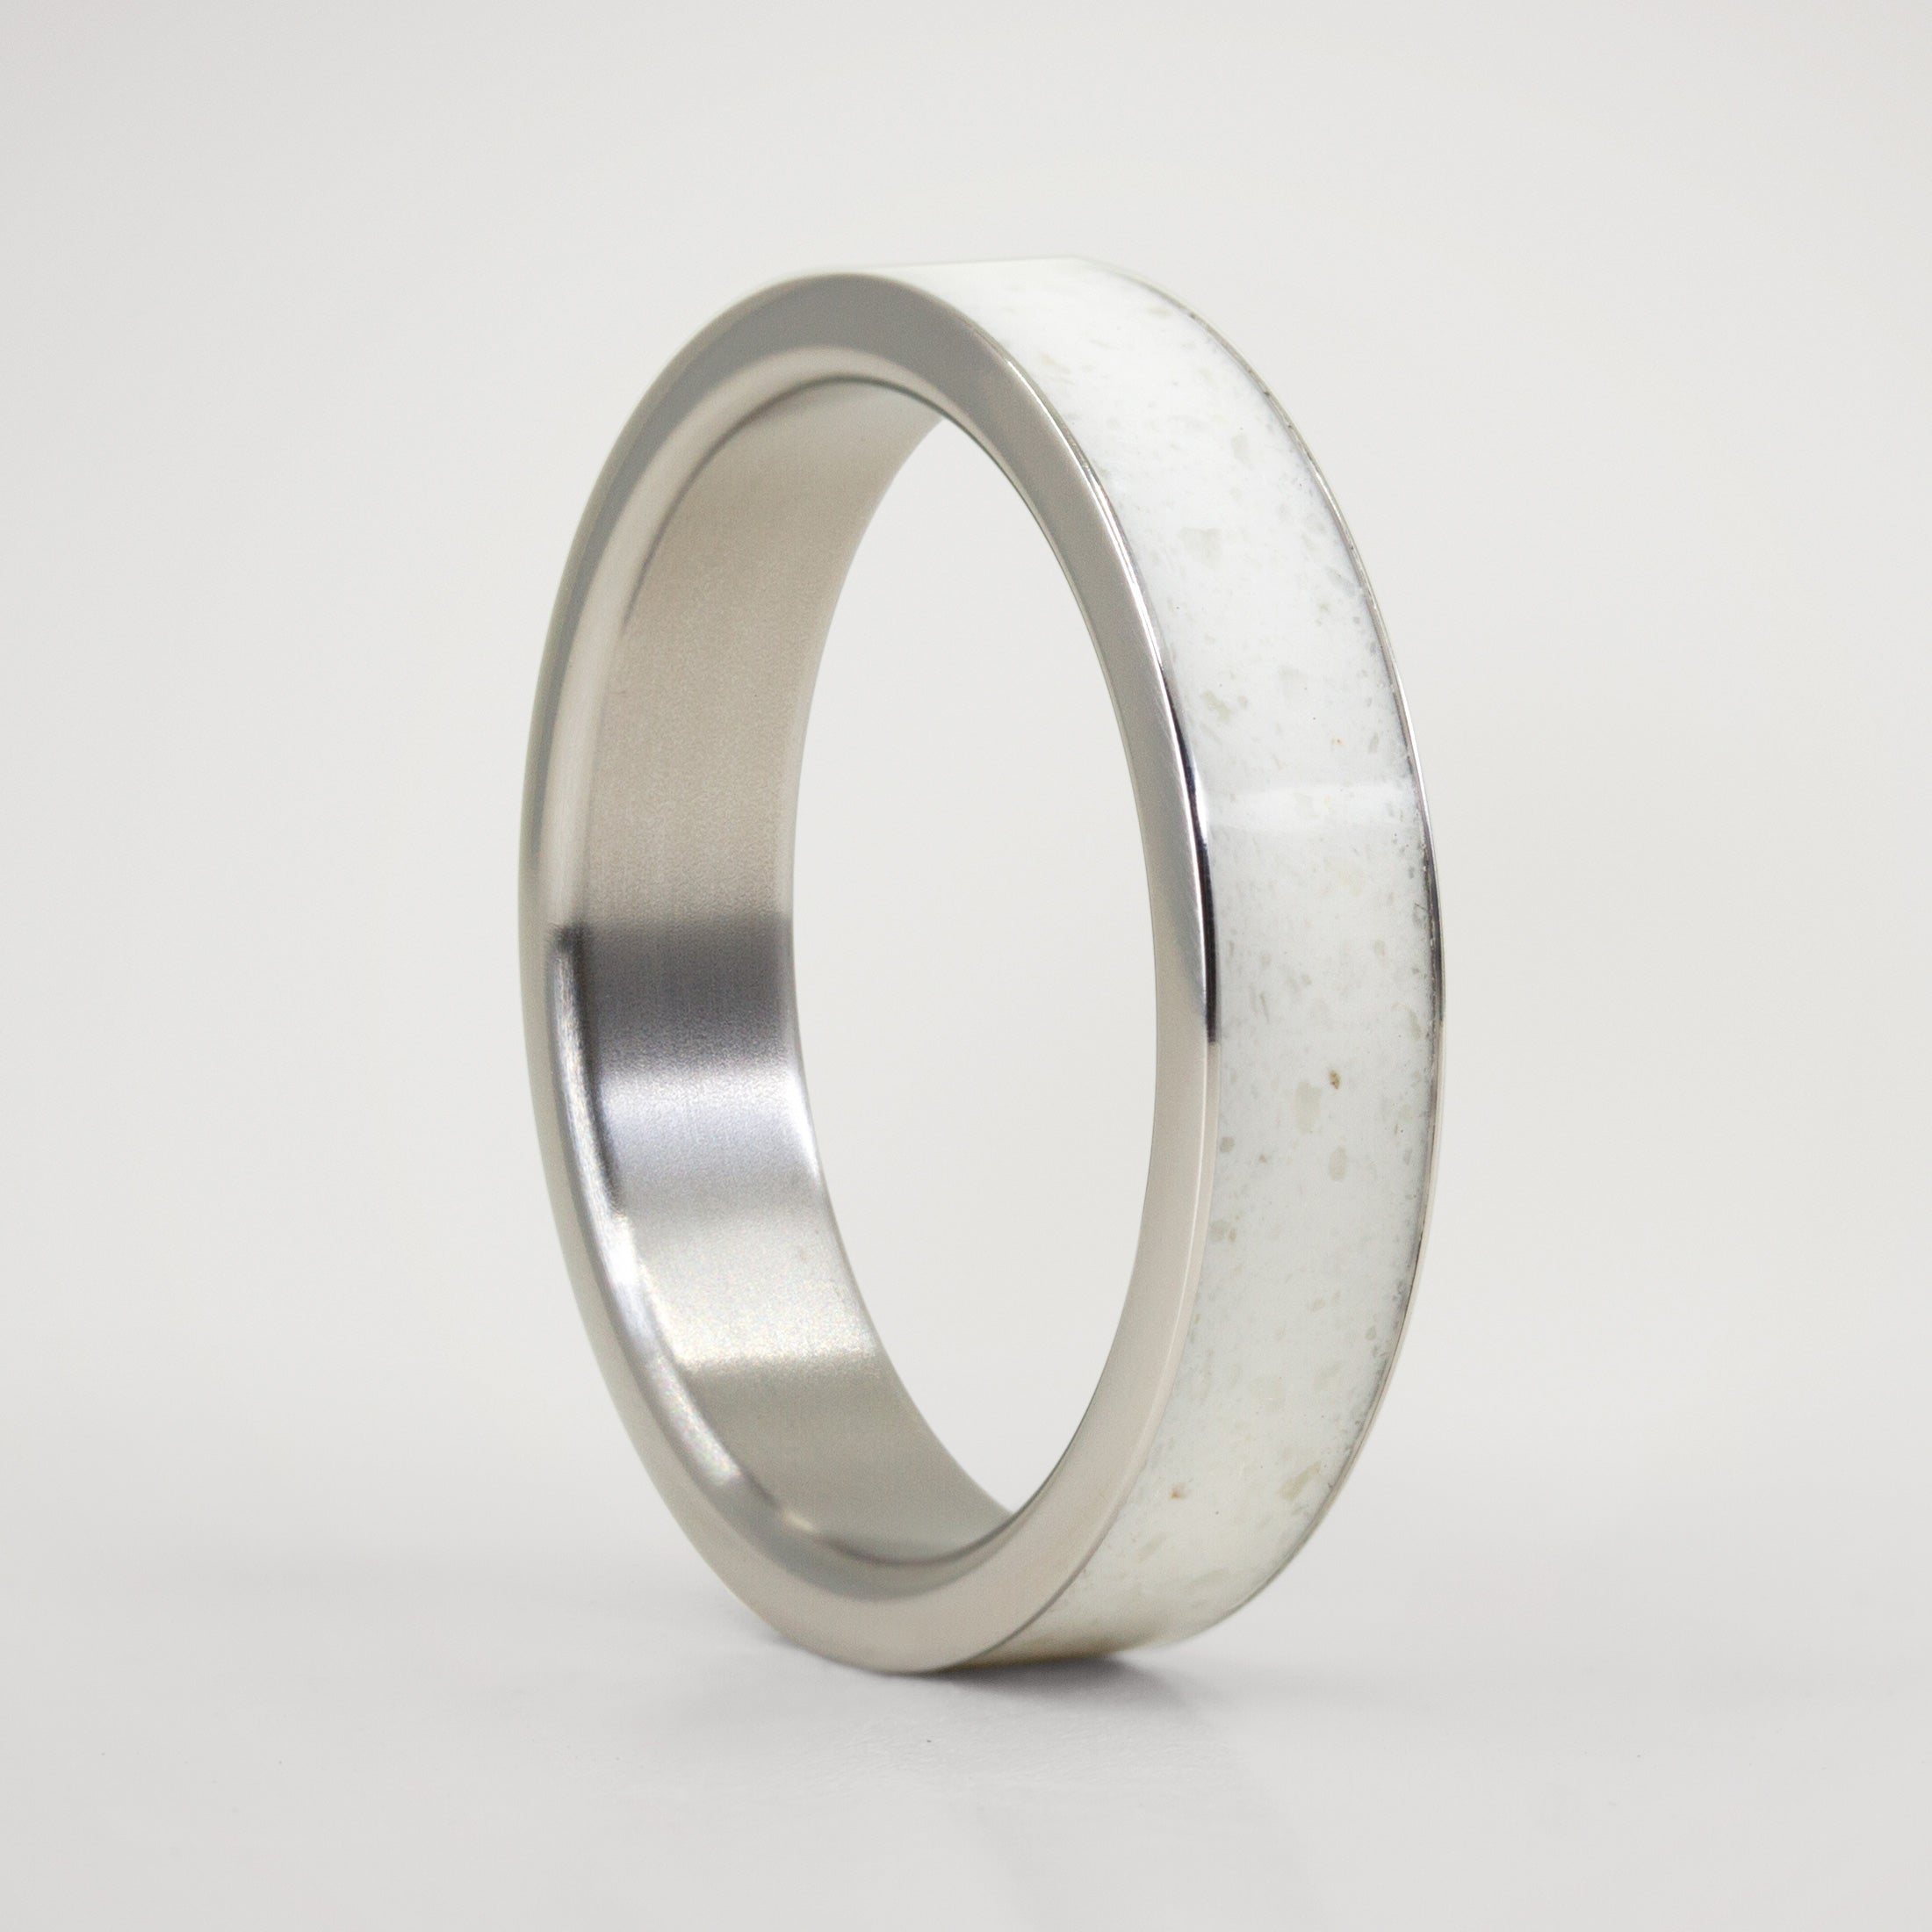 Carrara marble & titanium Ring